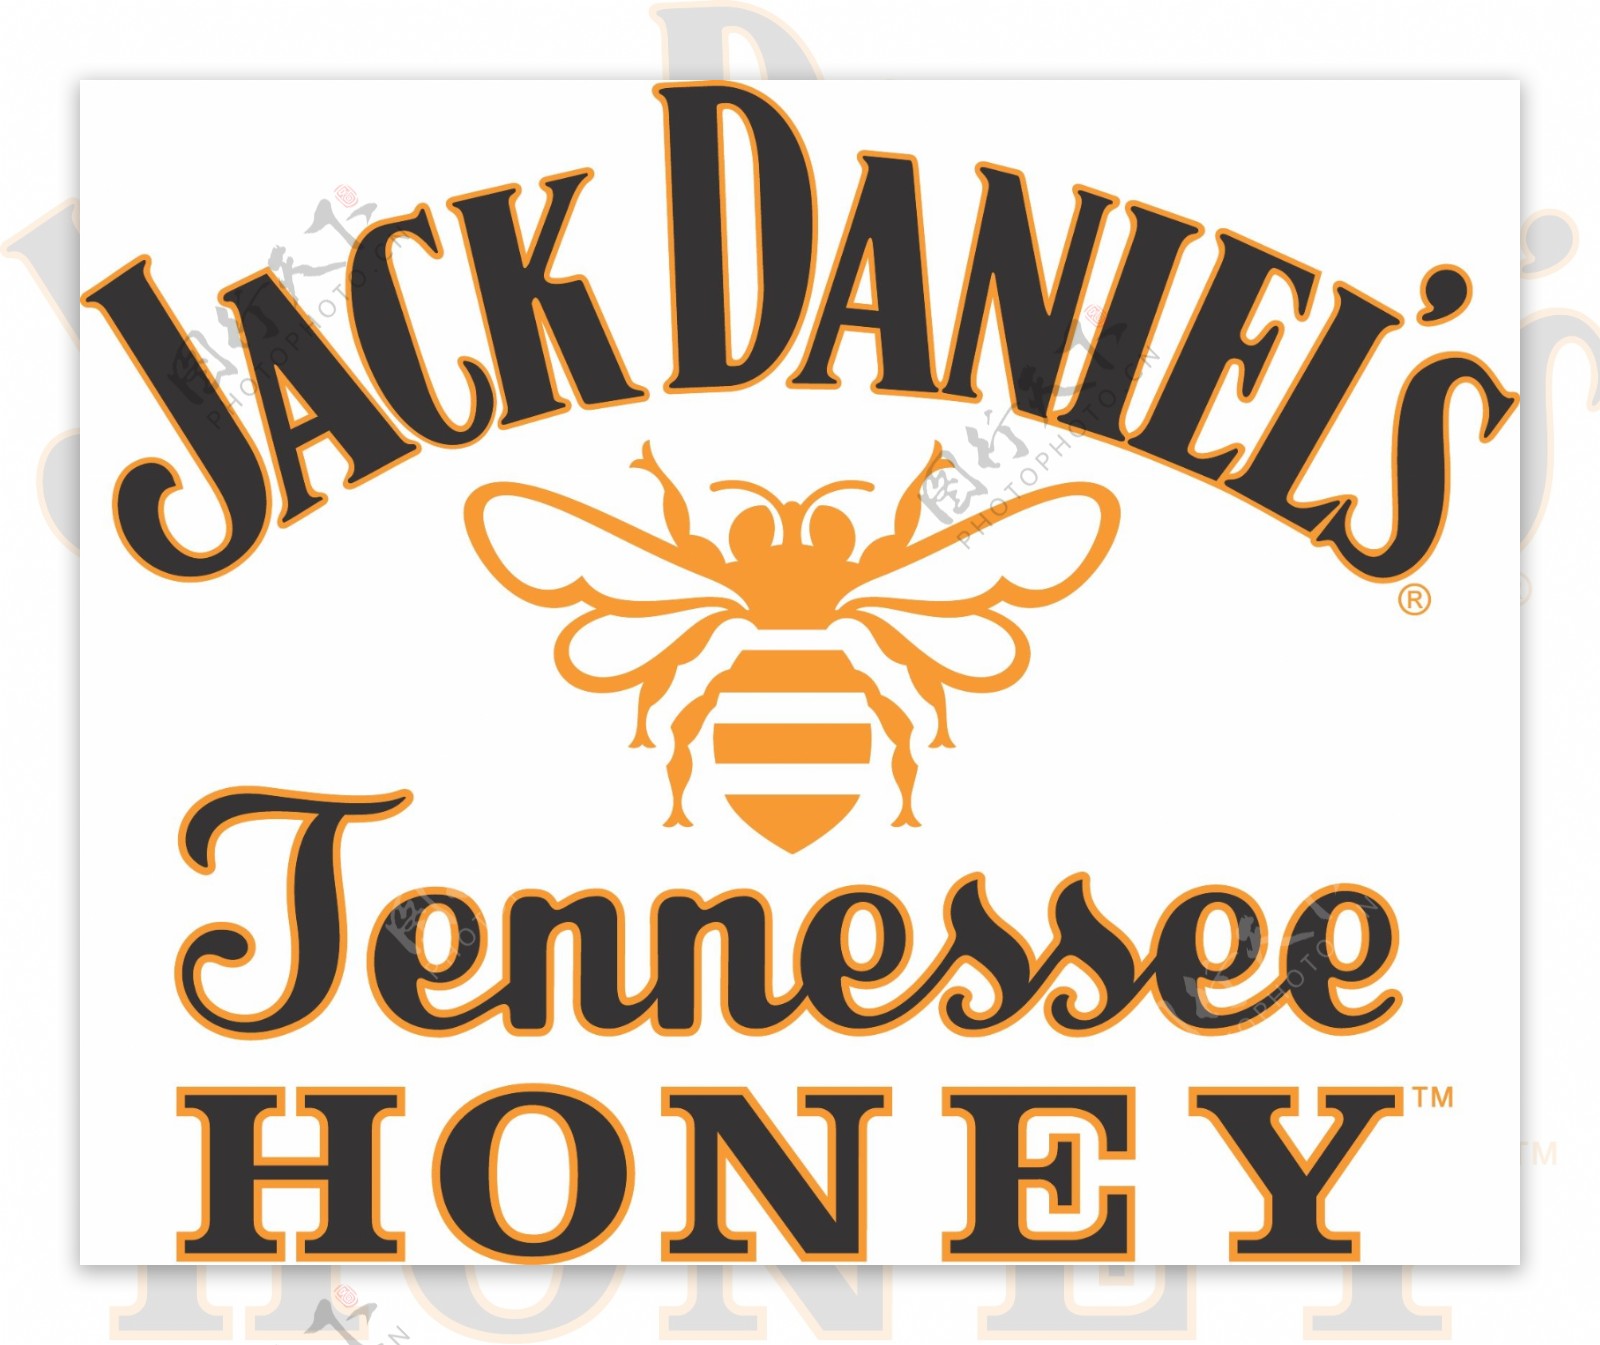 杰克丹尼尔是田纳西州蜂蜜